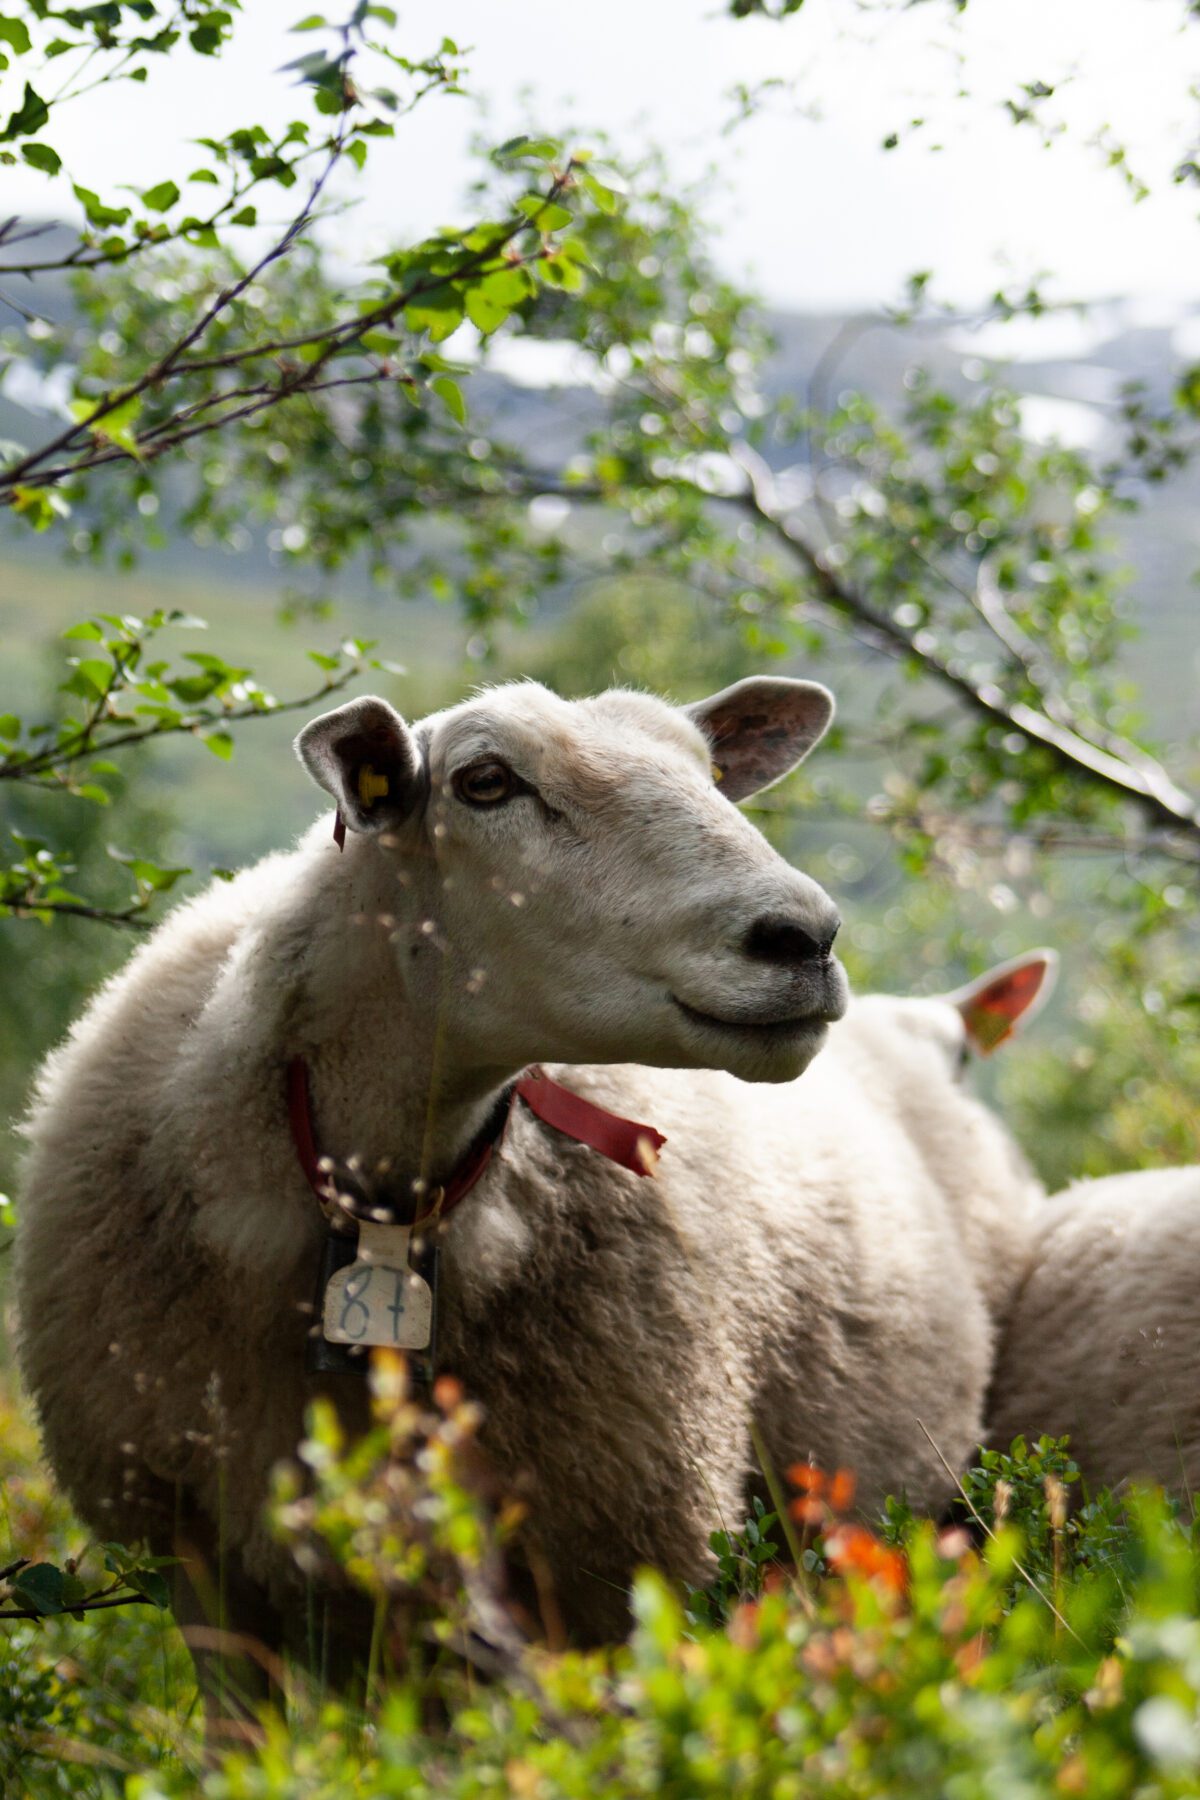 Sheep in Røldal, Norway.